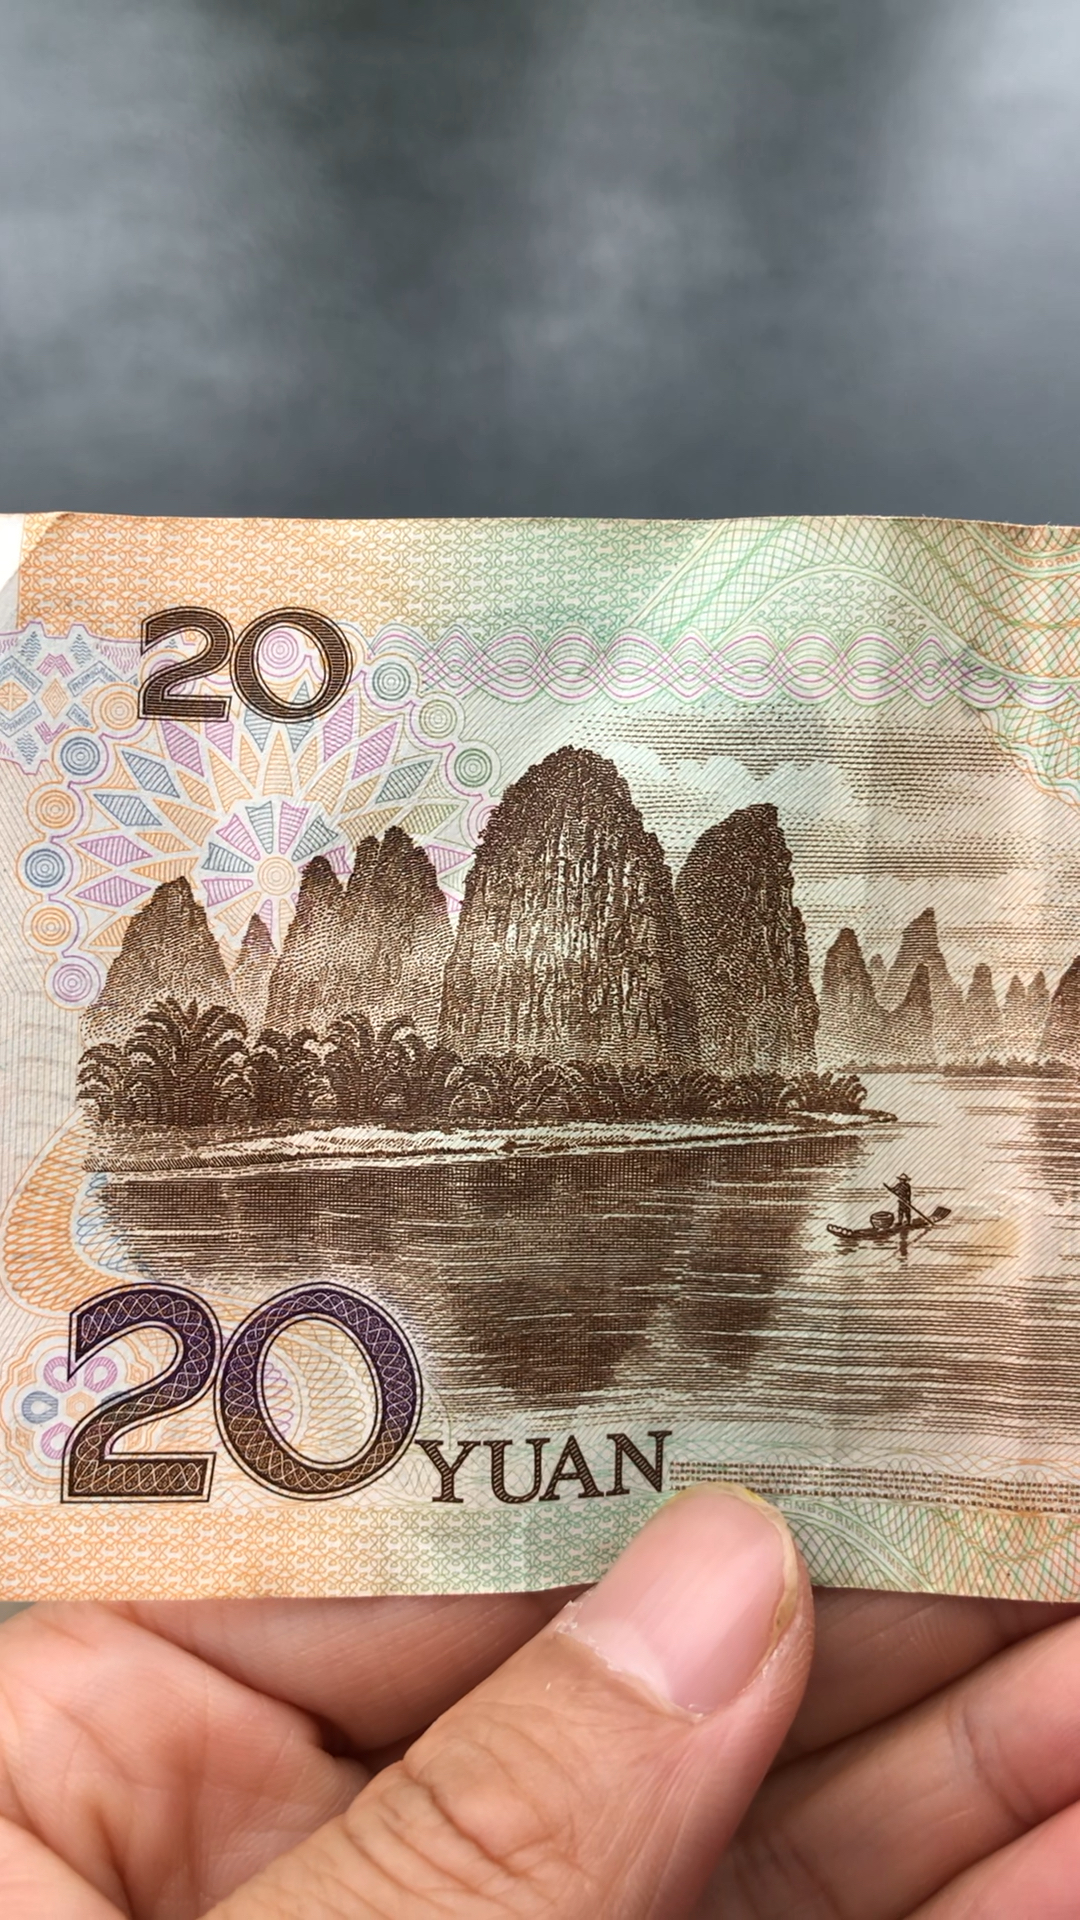 20元人民币背景图照片图片